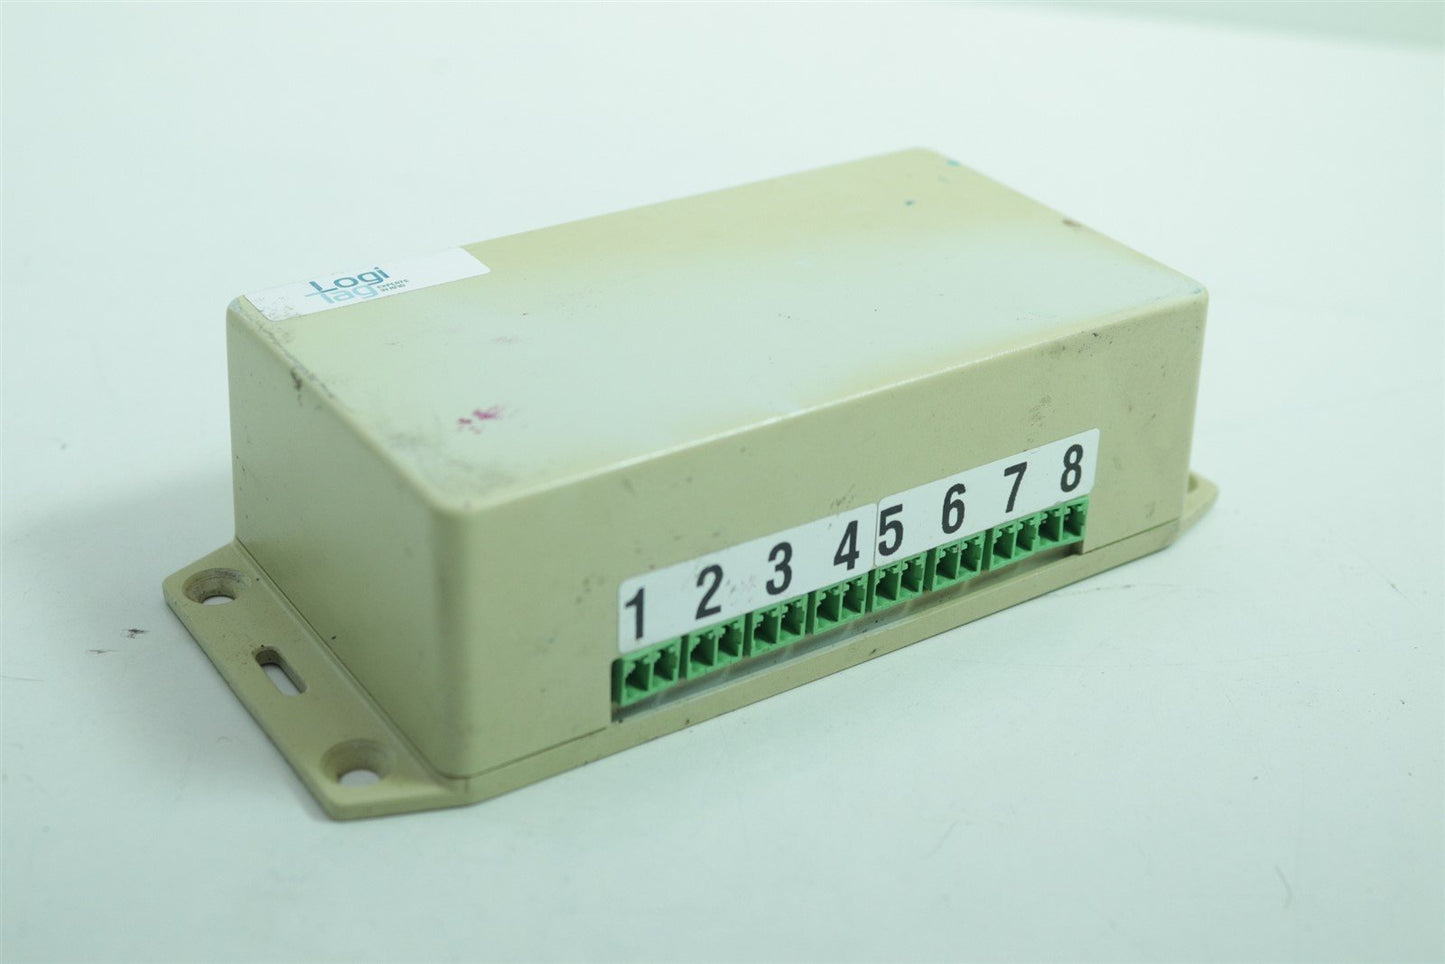 KORNIT DIGITAL RFID Assembly of Reader 06-MPLX-0002 & 6 or 8 Antenna